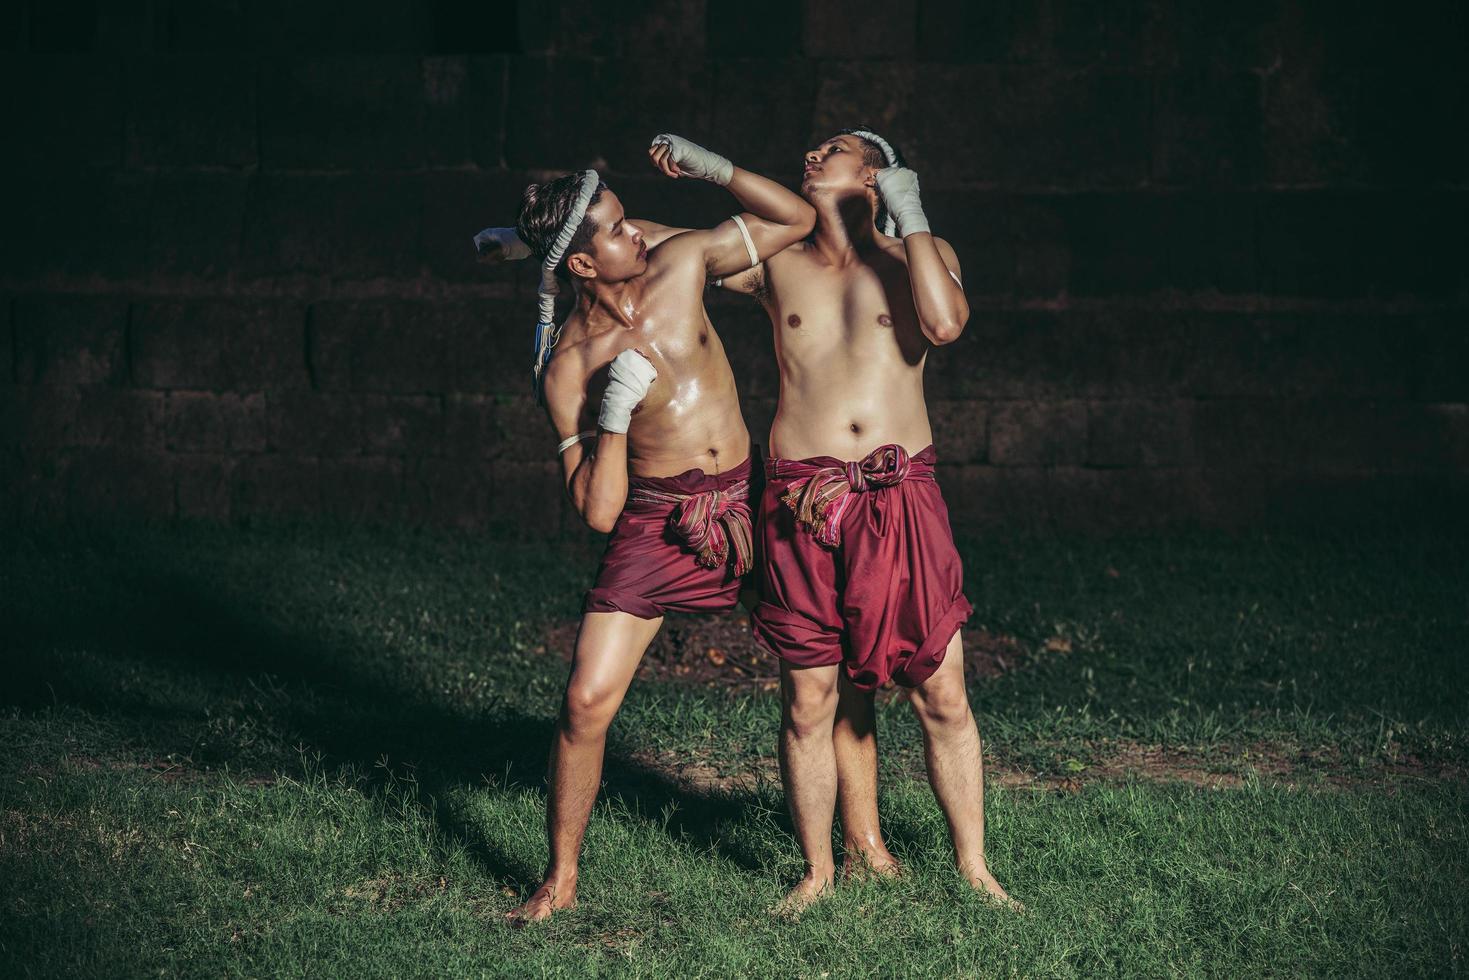 due pugili combattono con le arti marziali del muay thai. foto